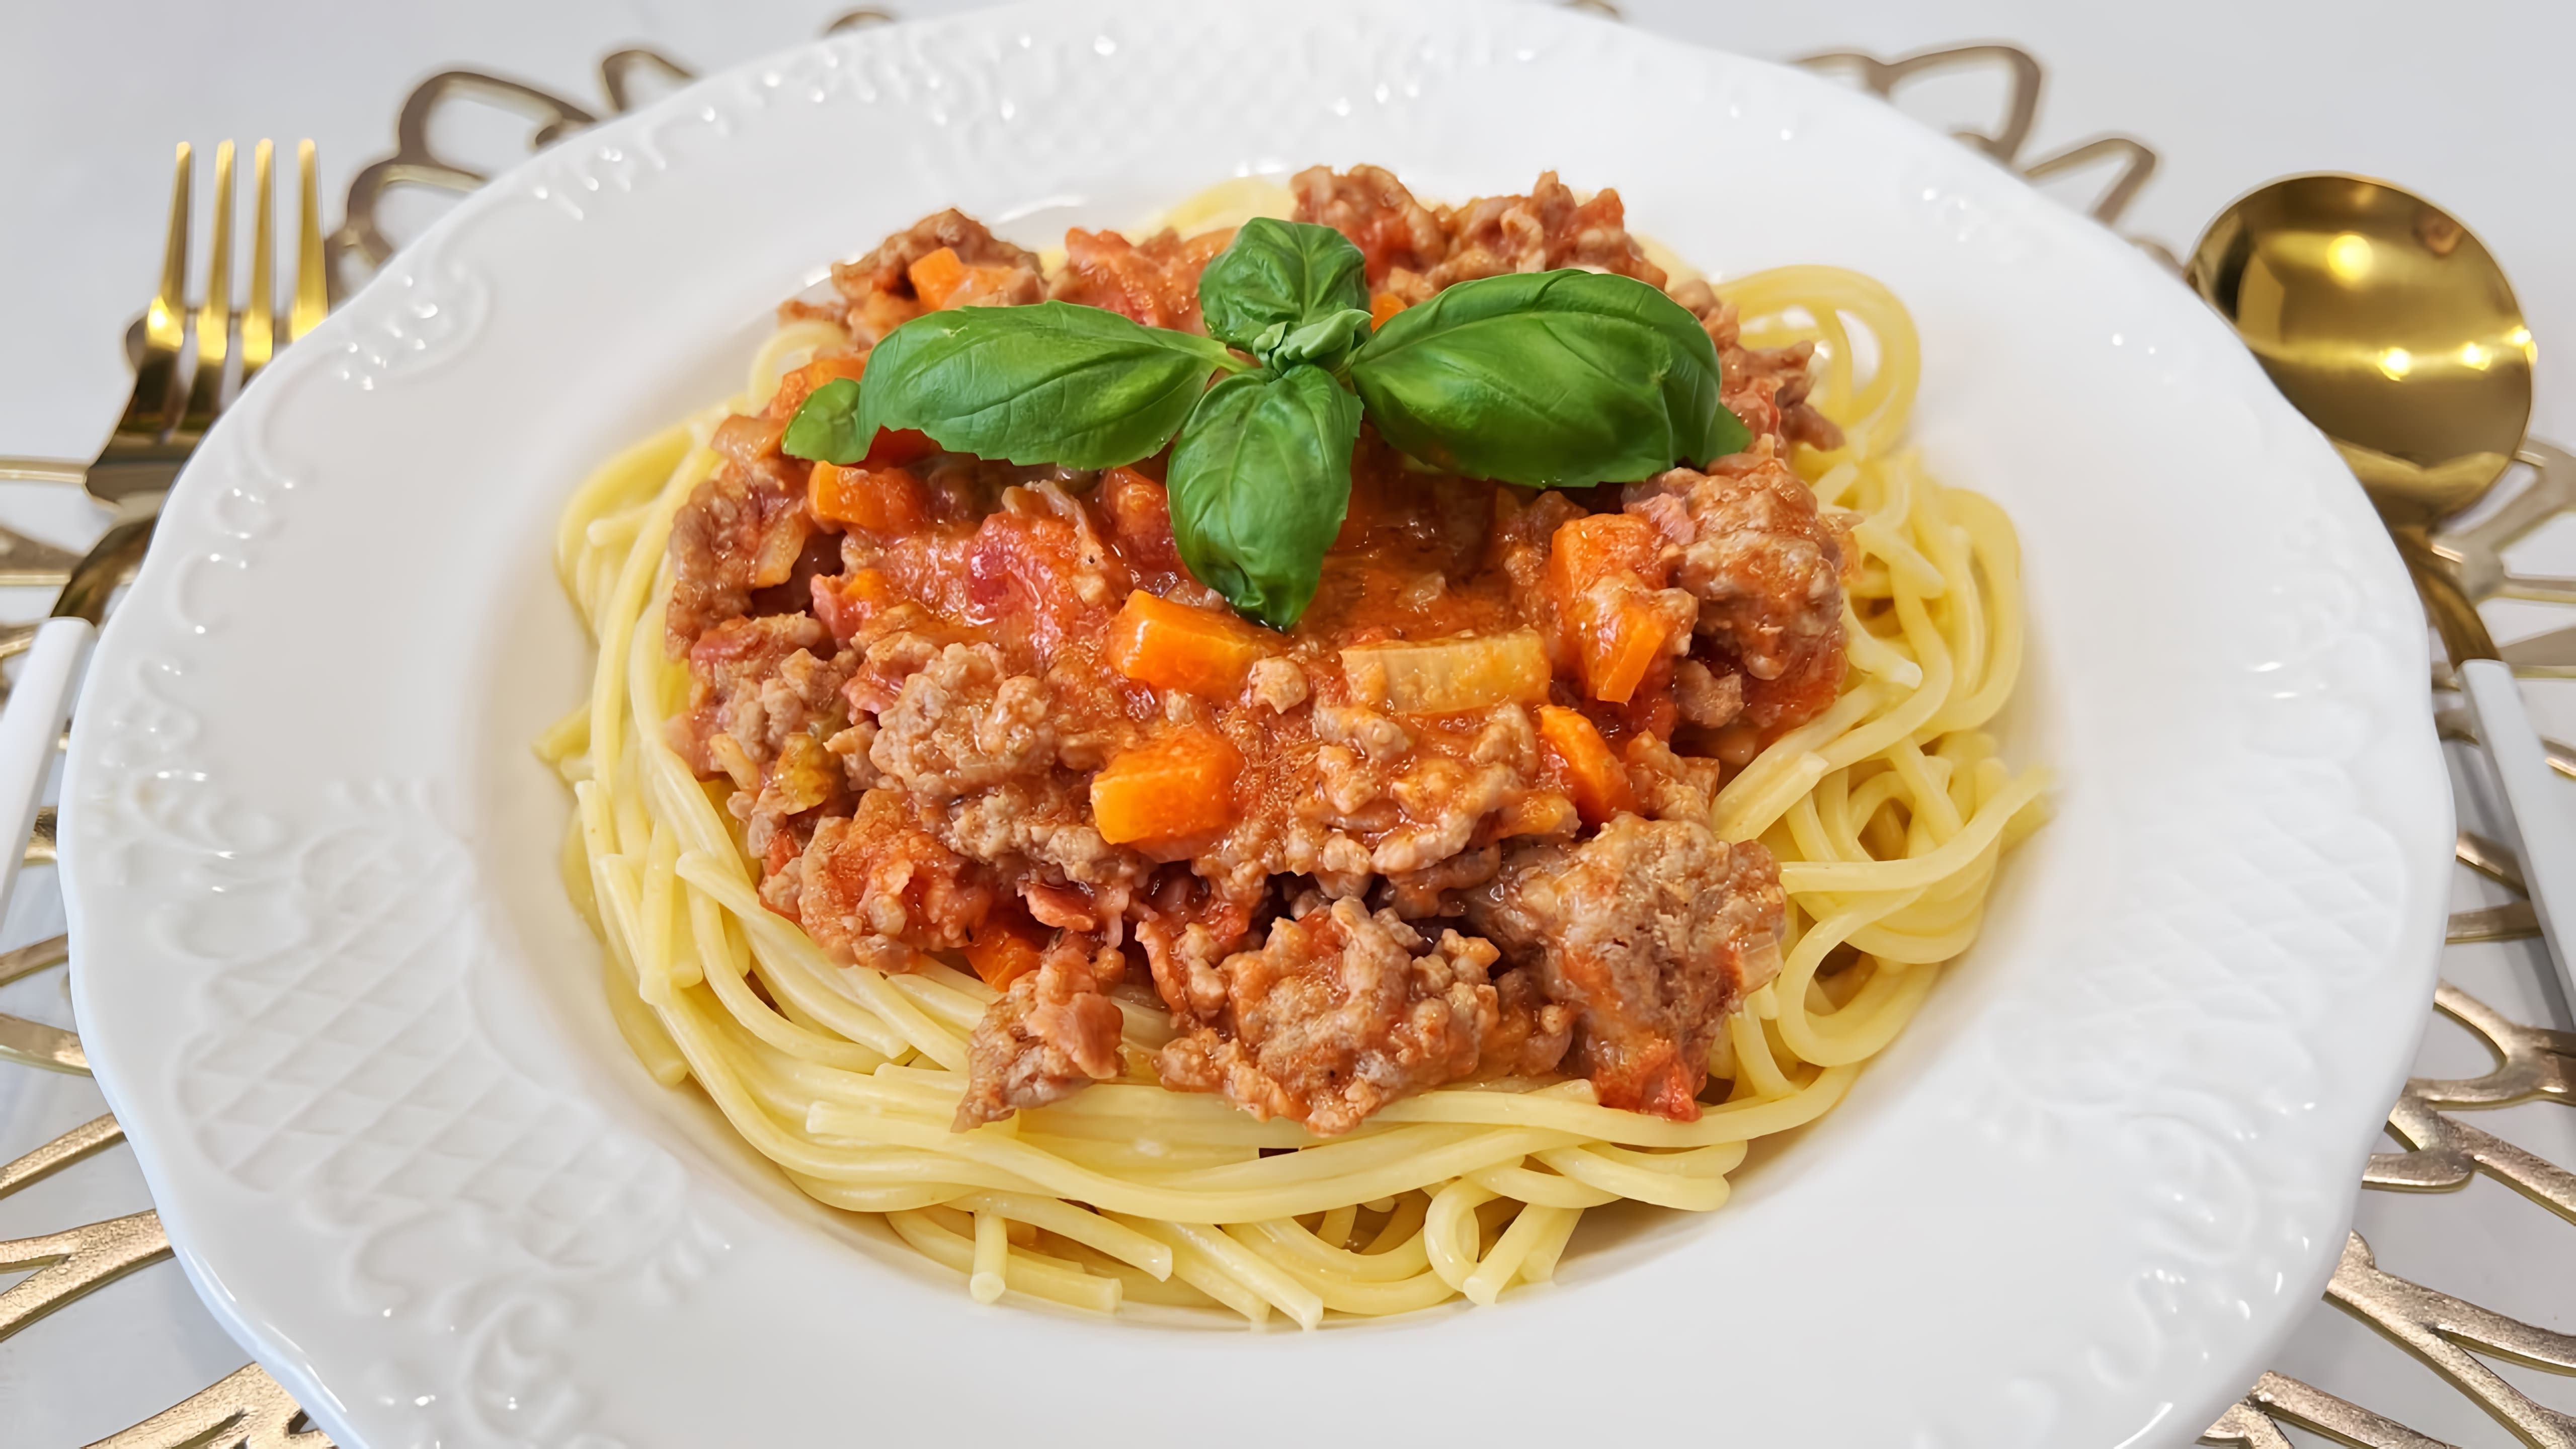 В этом видео демонстрируется рецепт приготовления спагетти БОЛОНЬЕЗЕ, традиционного блюда итальянской кухни